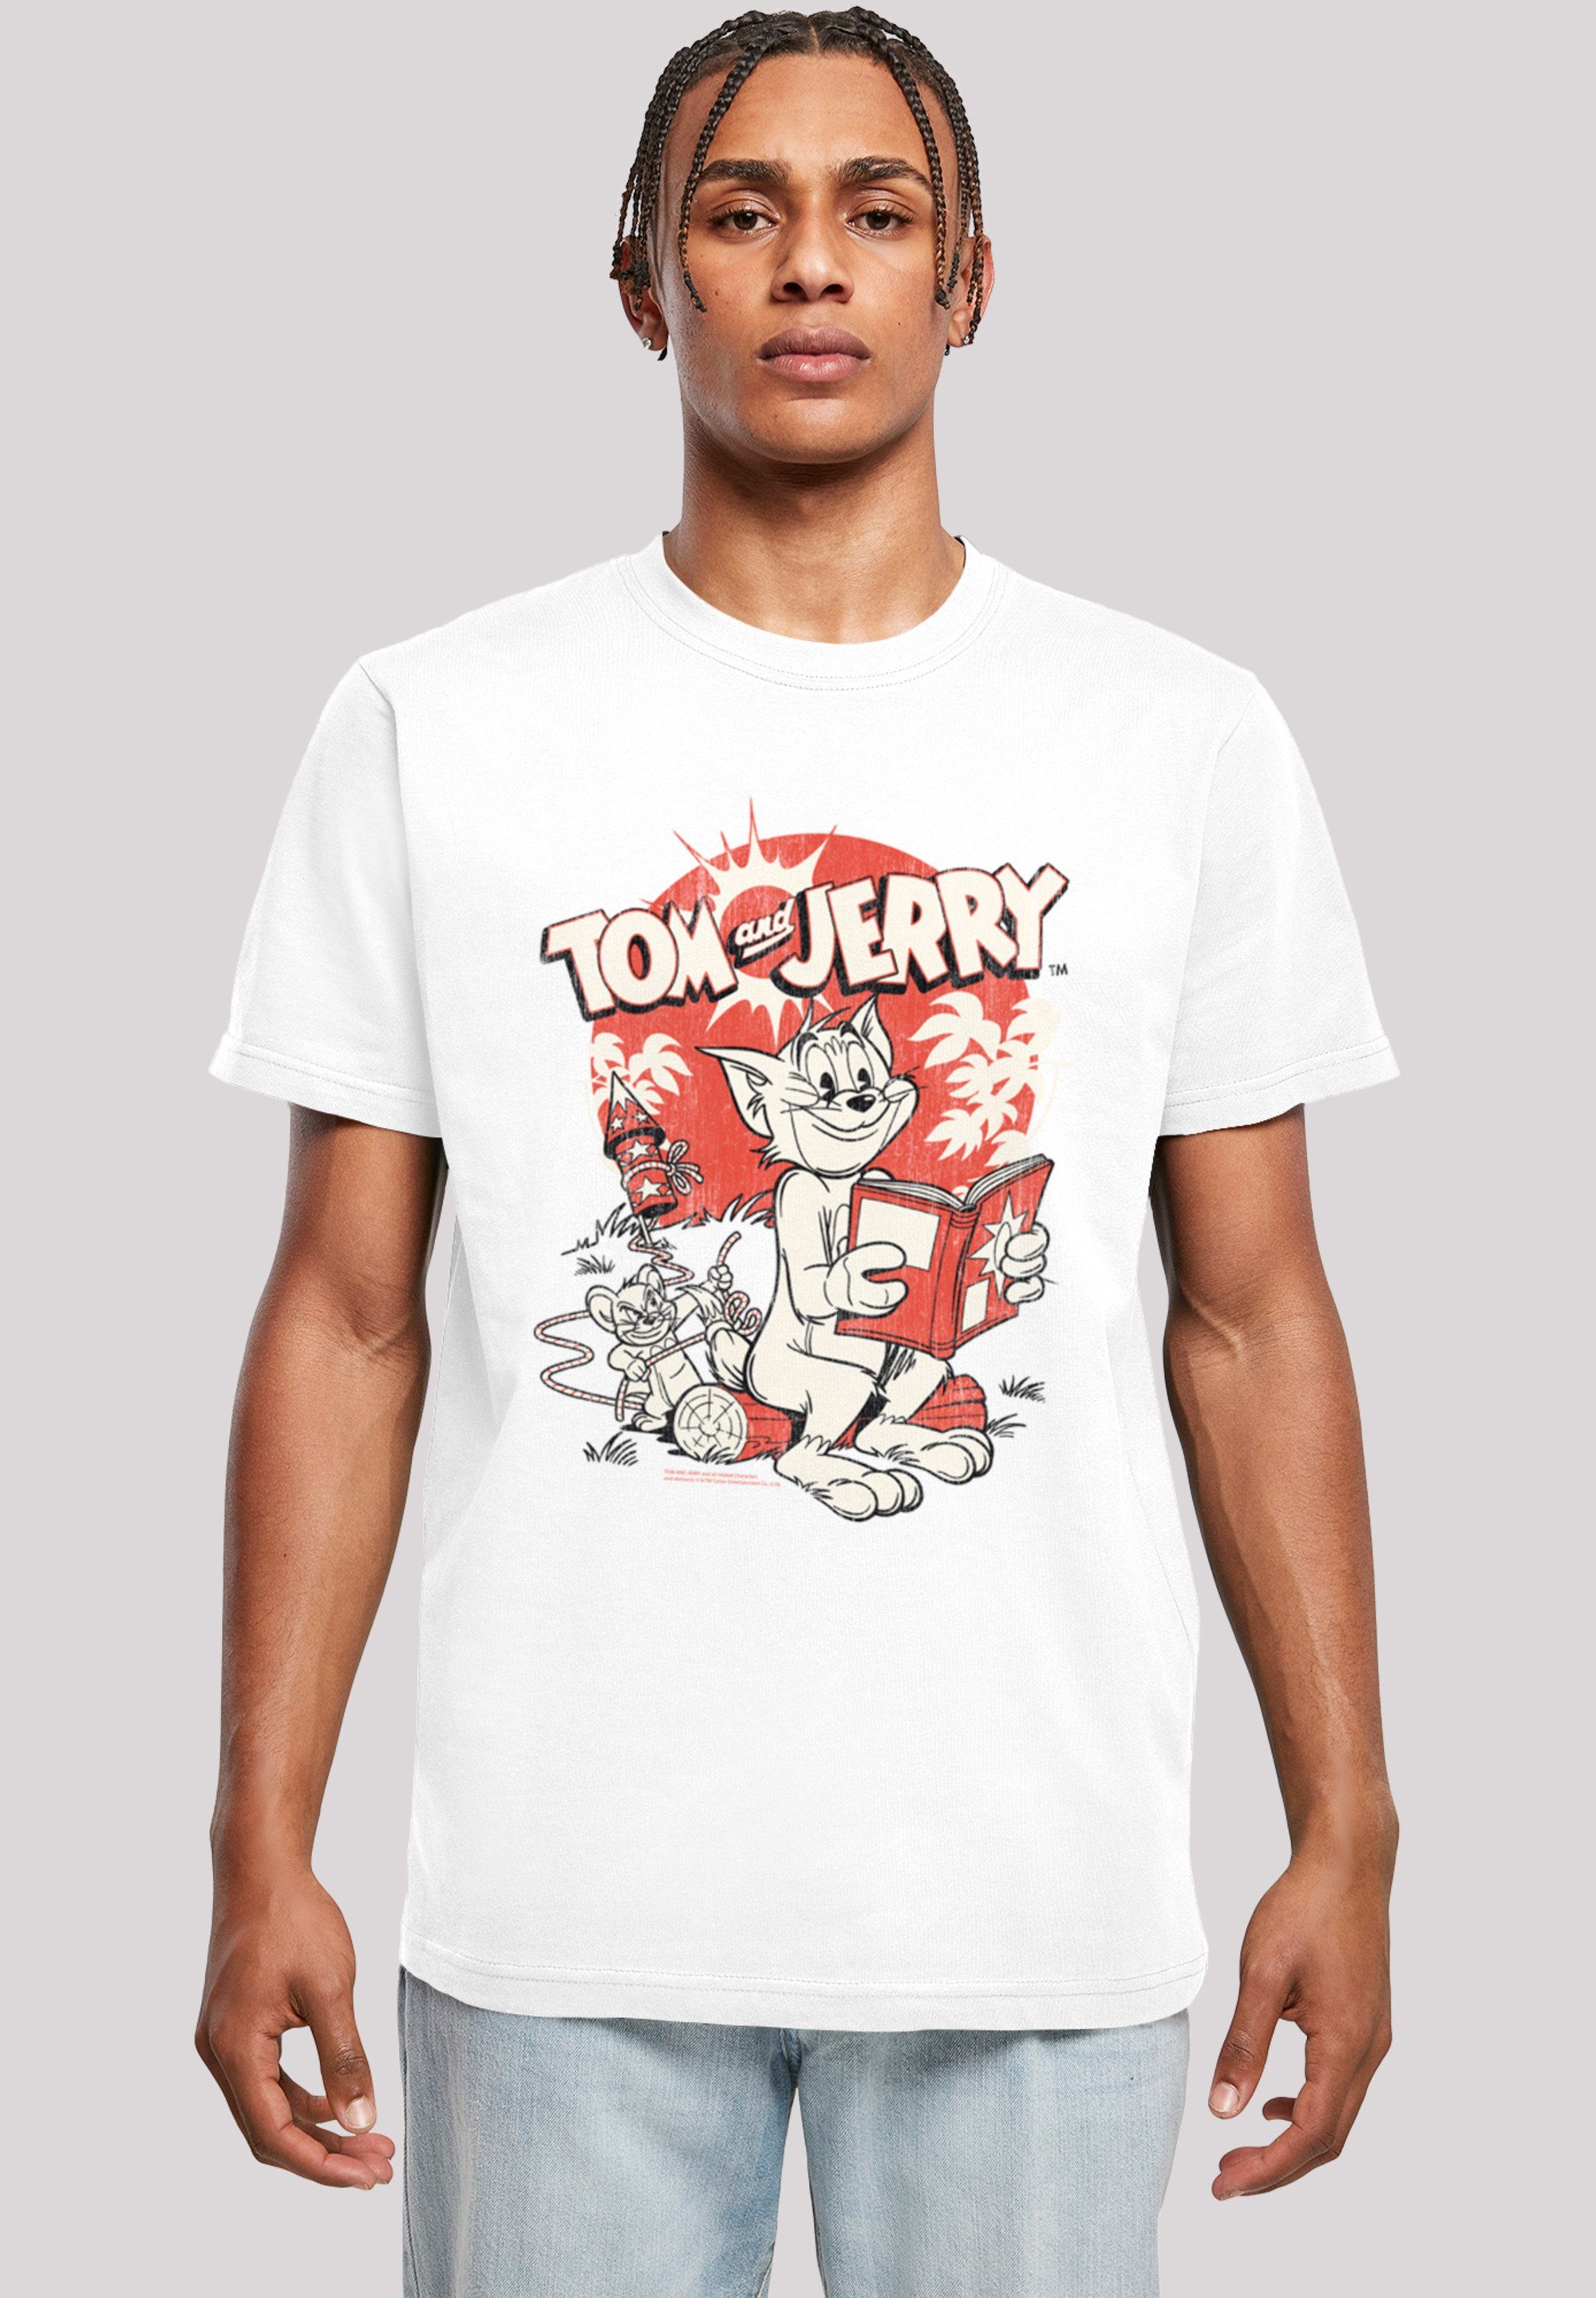 Prank weiß F4NT4STIC Rocket und Merch,Regular-Fit,Basic,Bedruckt Herren,Premium T-Shirt Jerry Tom